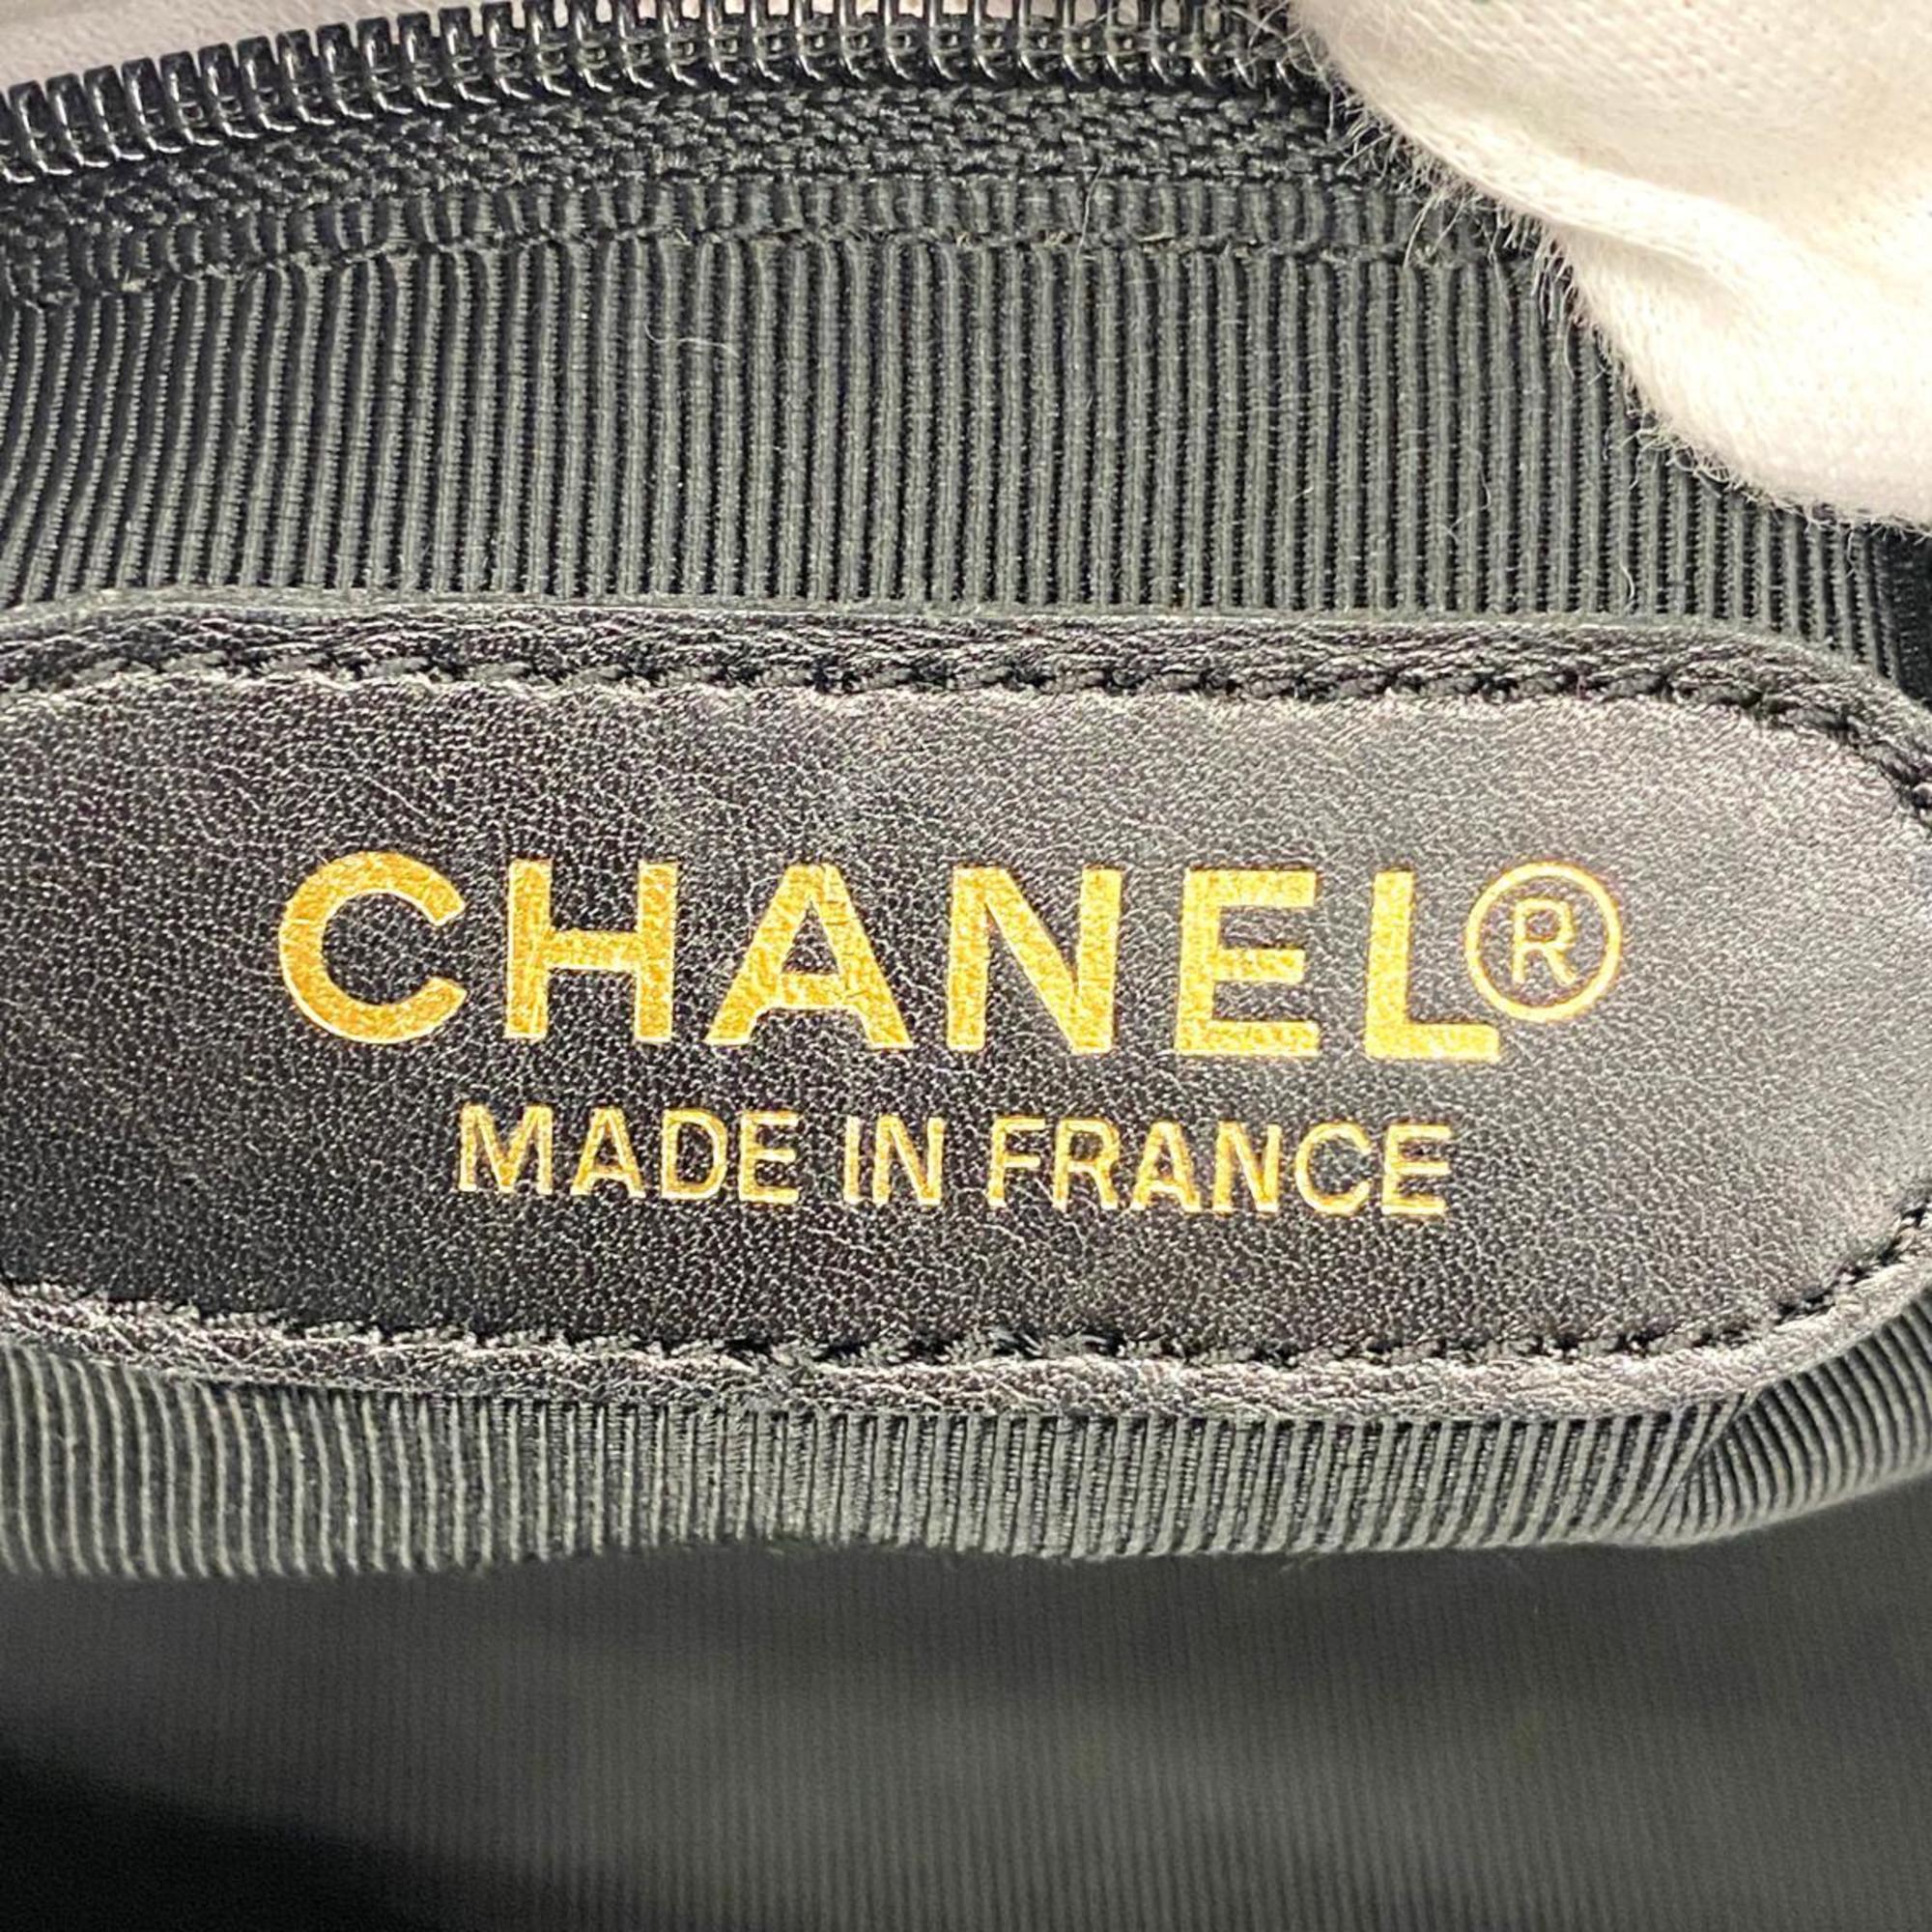 シャネル(Chanel) シャネル ハンドバッグ キャビアスキン ブラック   レディース